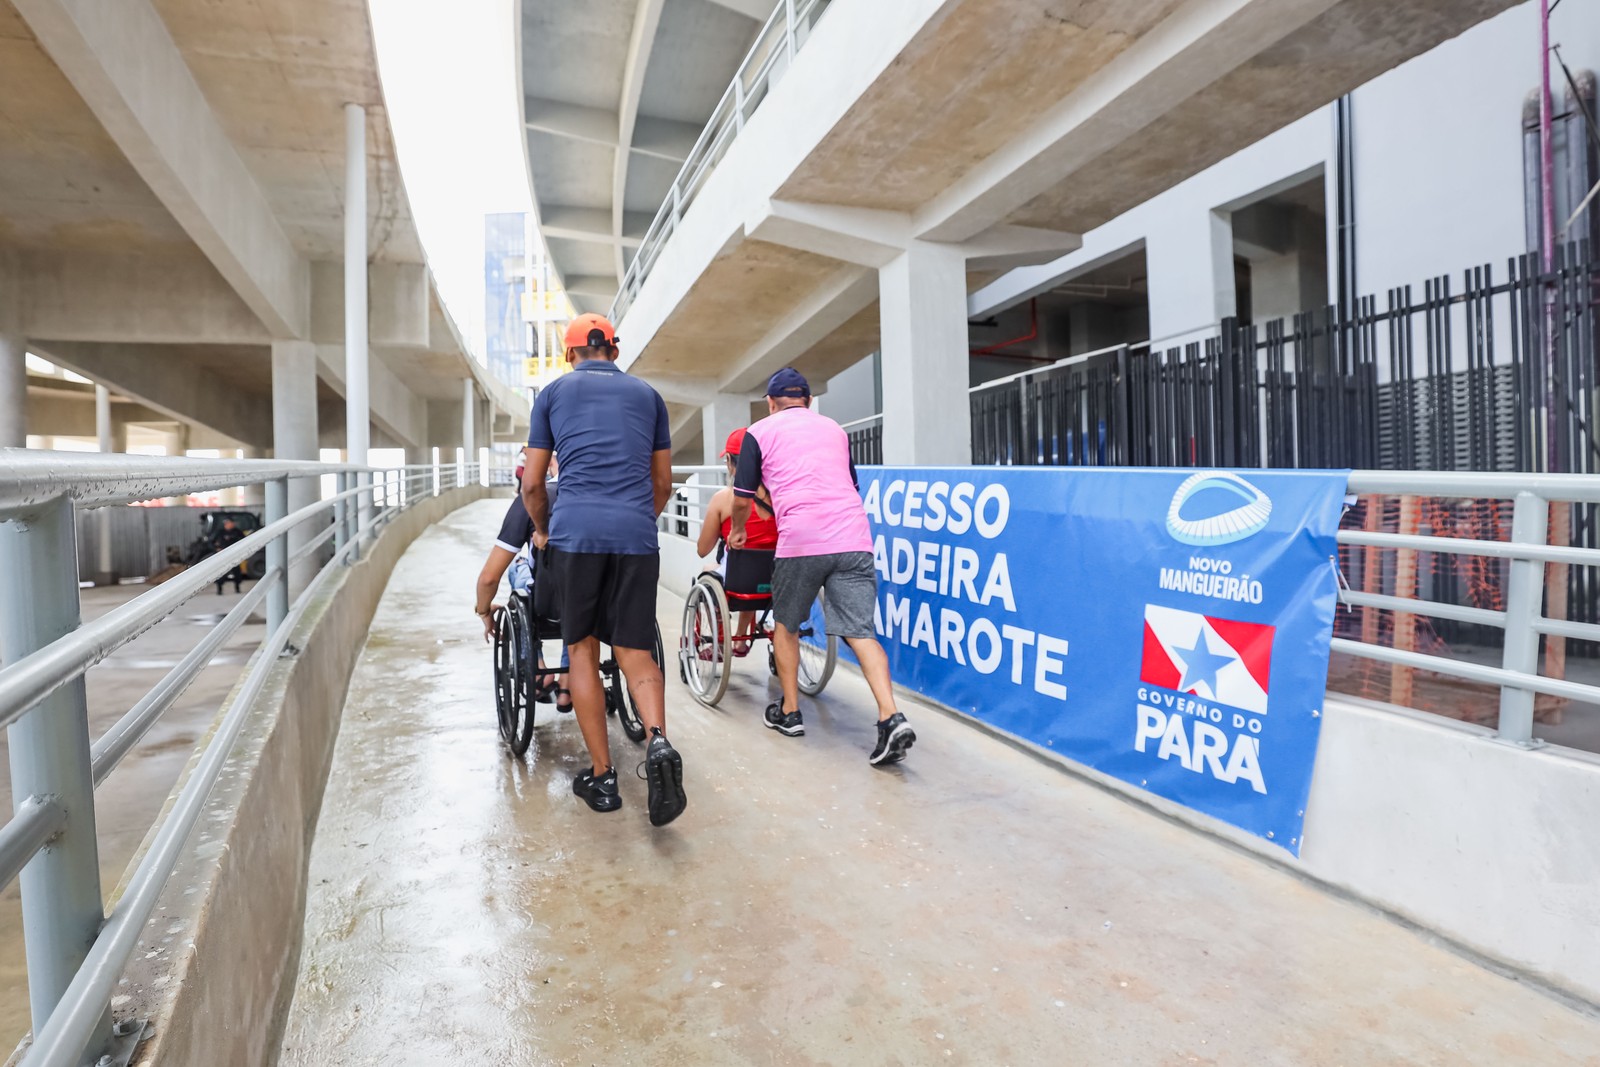 Rampas do Novo Mangueirão ajudam na acessibilidade do estádio — Foto: Marcelo Seabra / Agência Pará